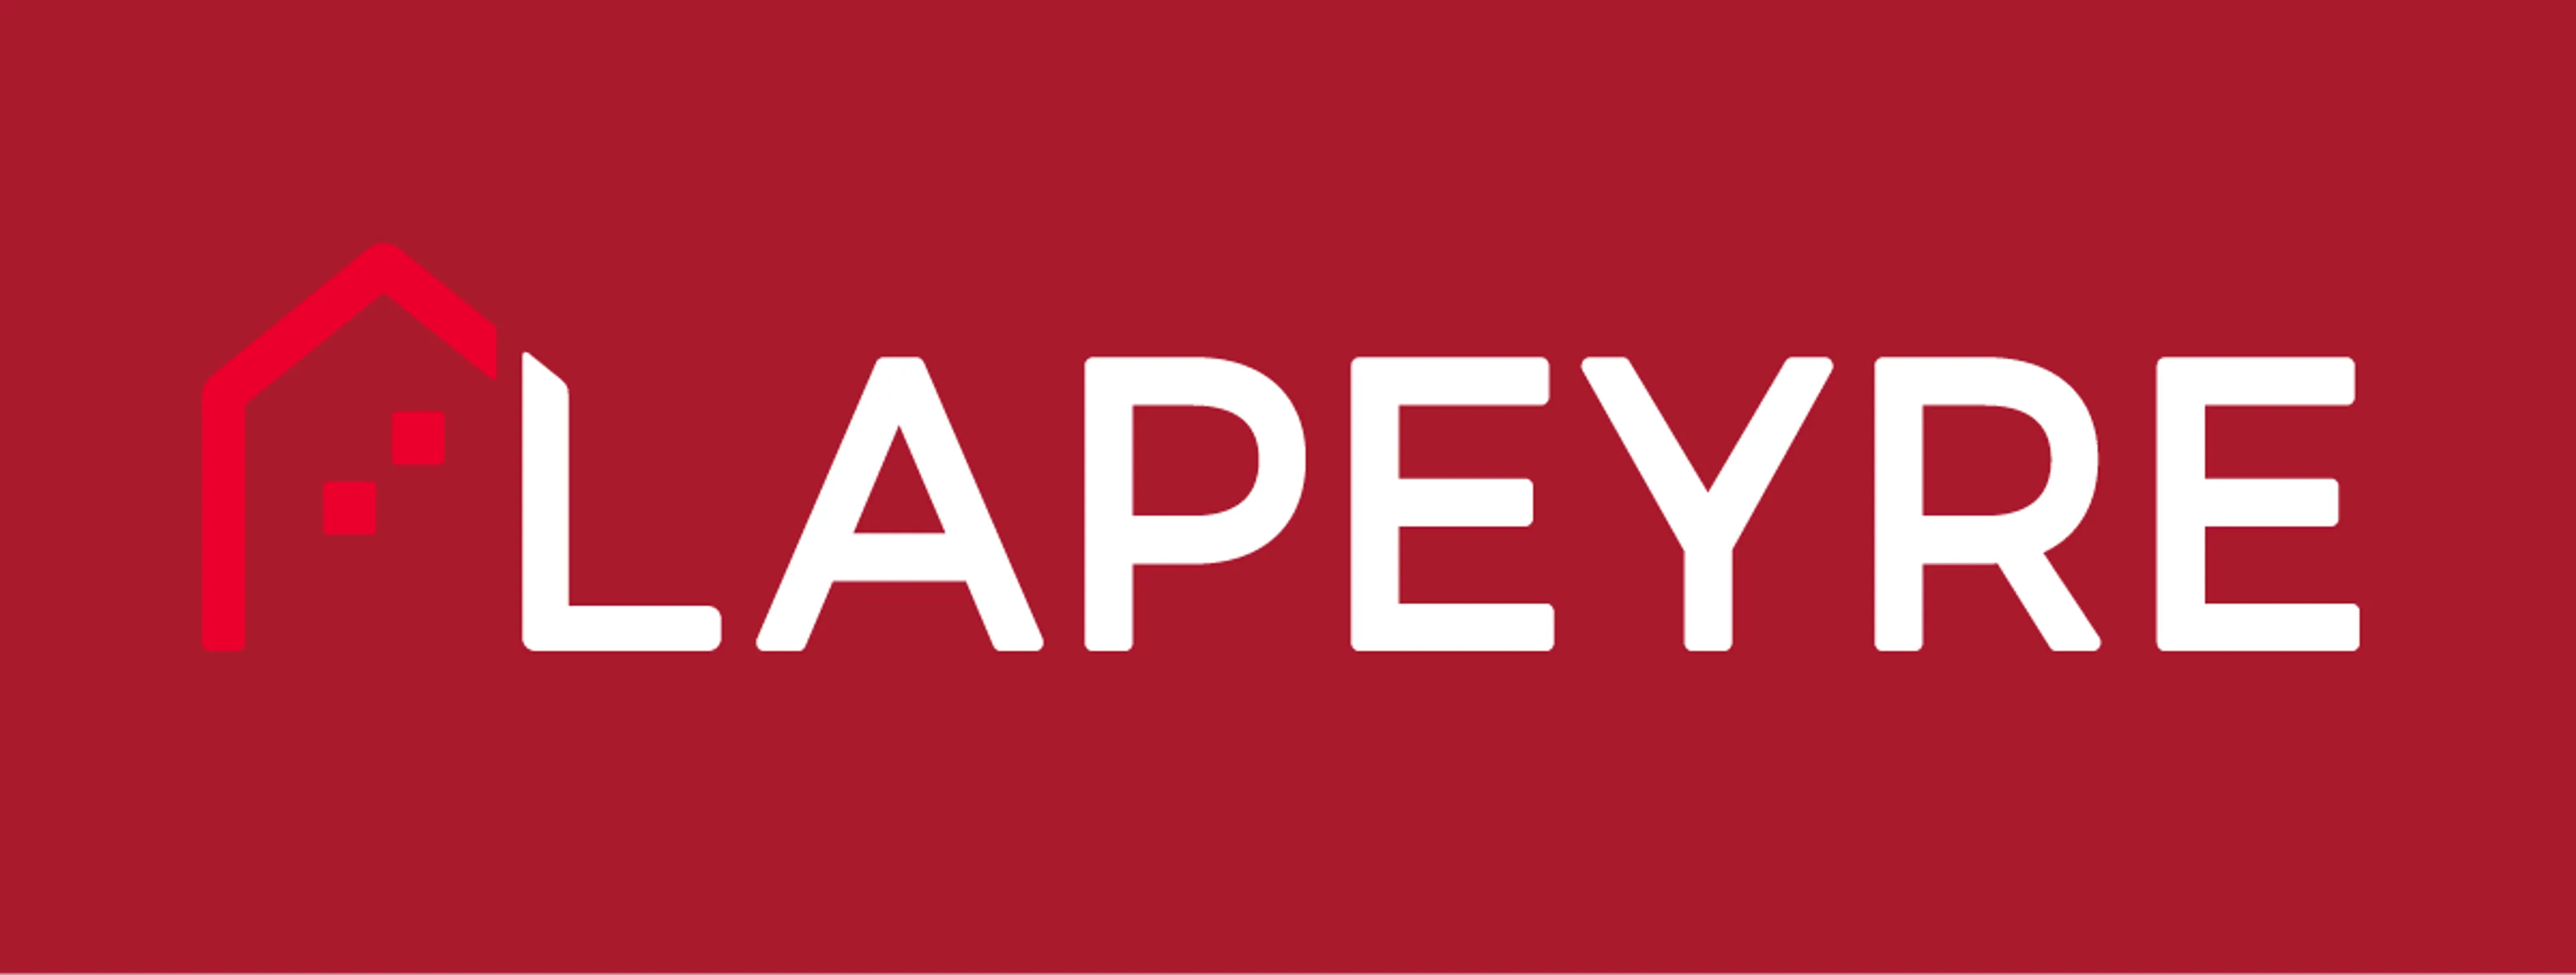 LAPEYRE logo